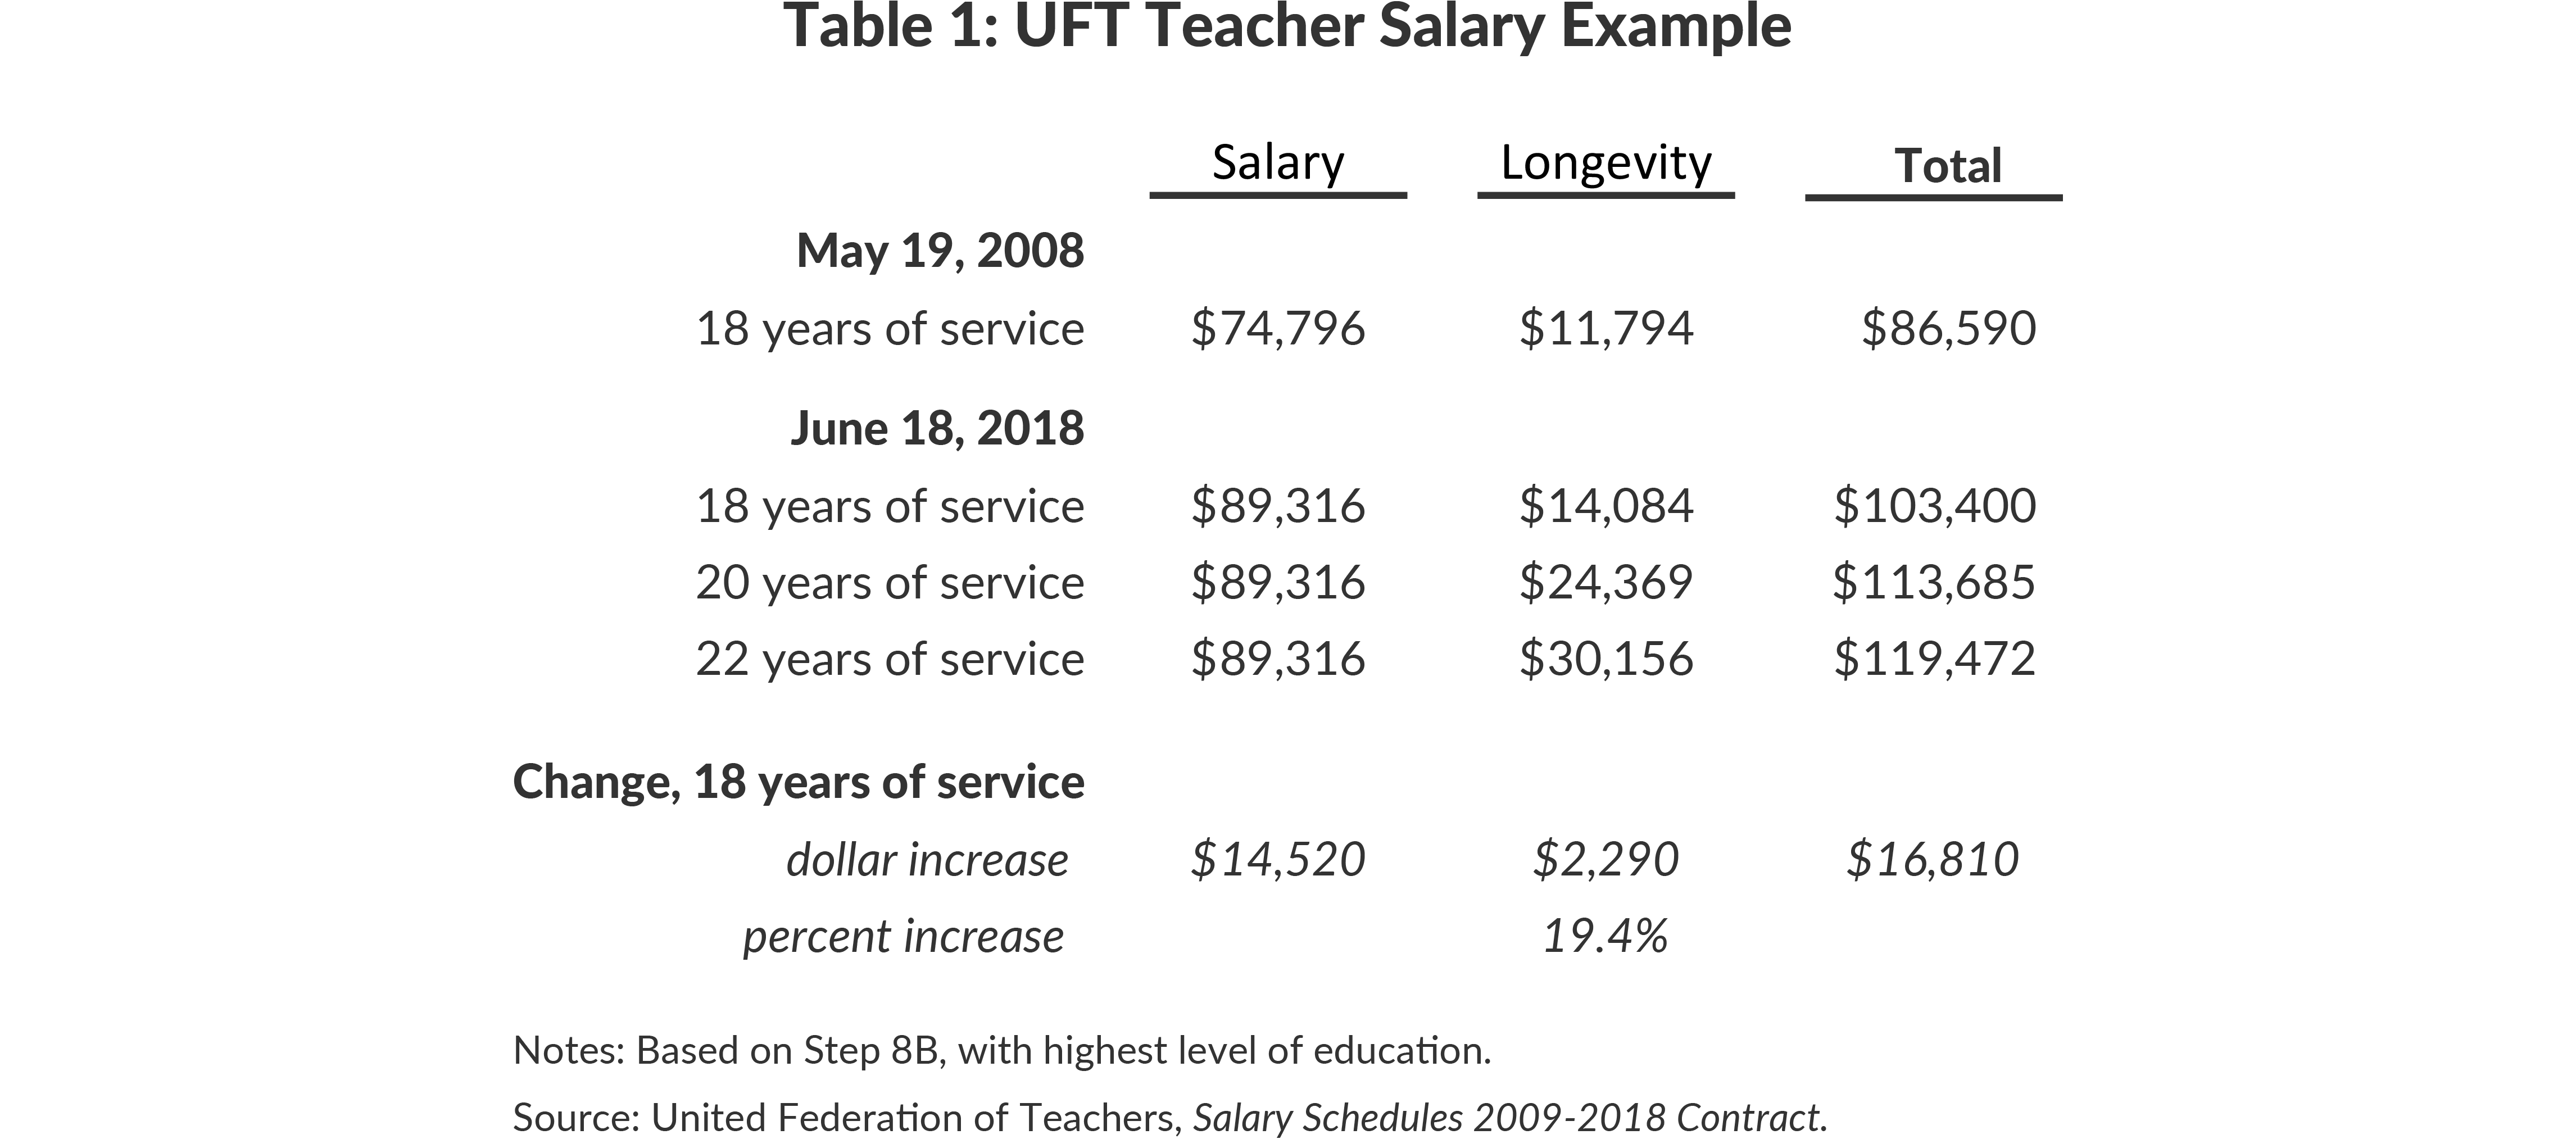 Table 1: UFT Teacher Salary Example